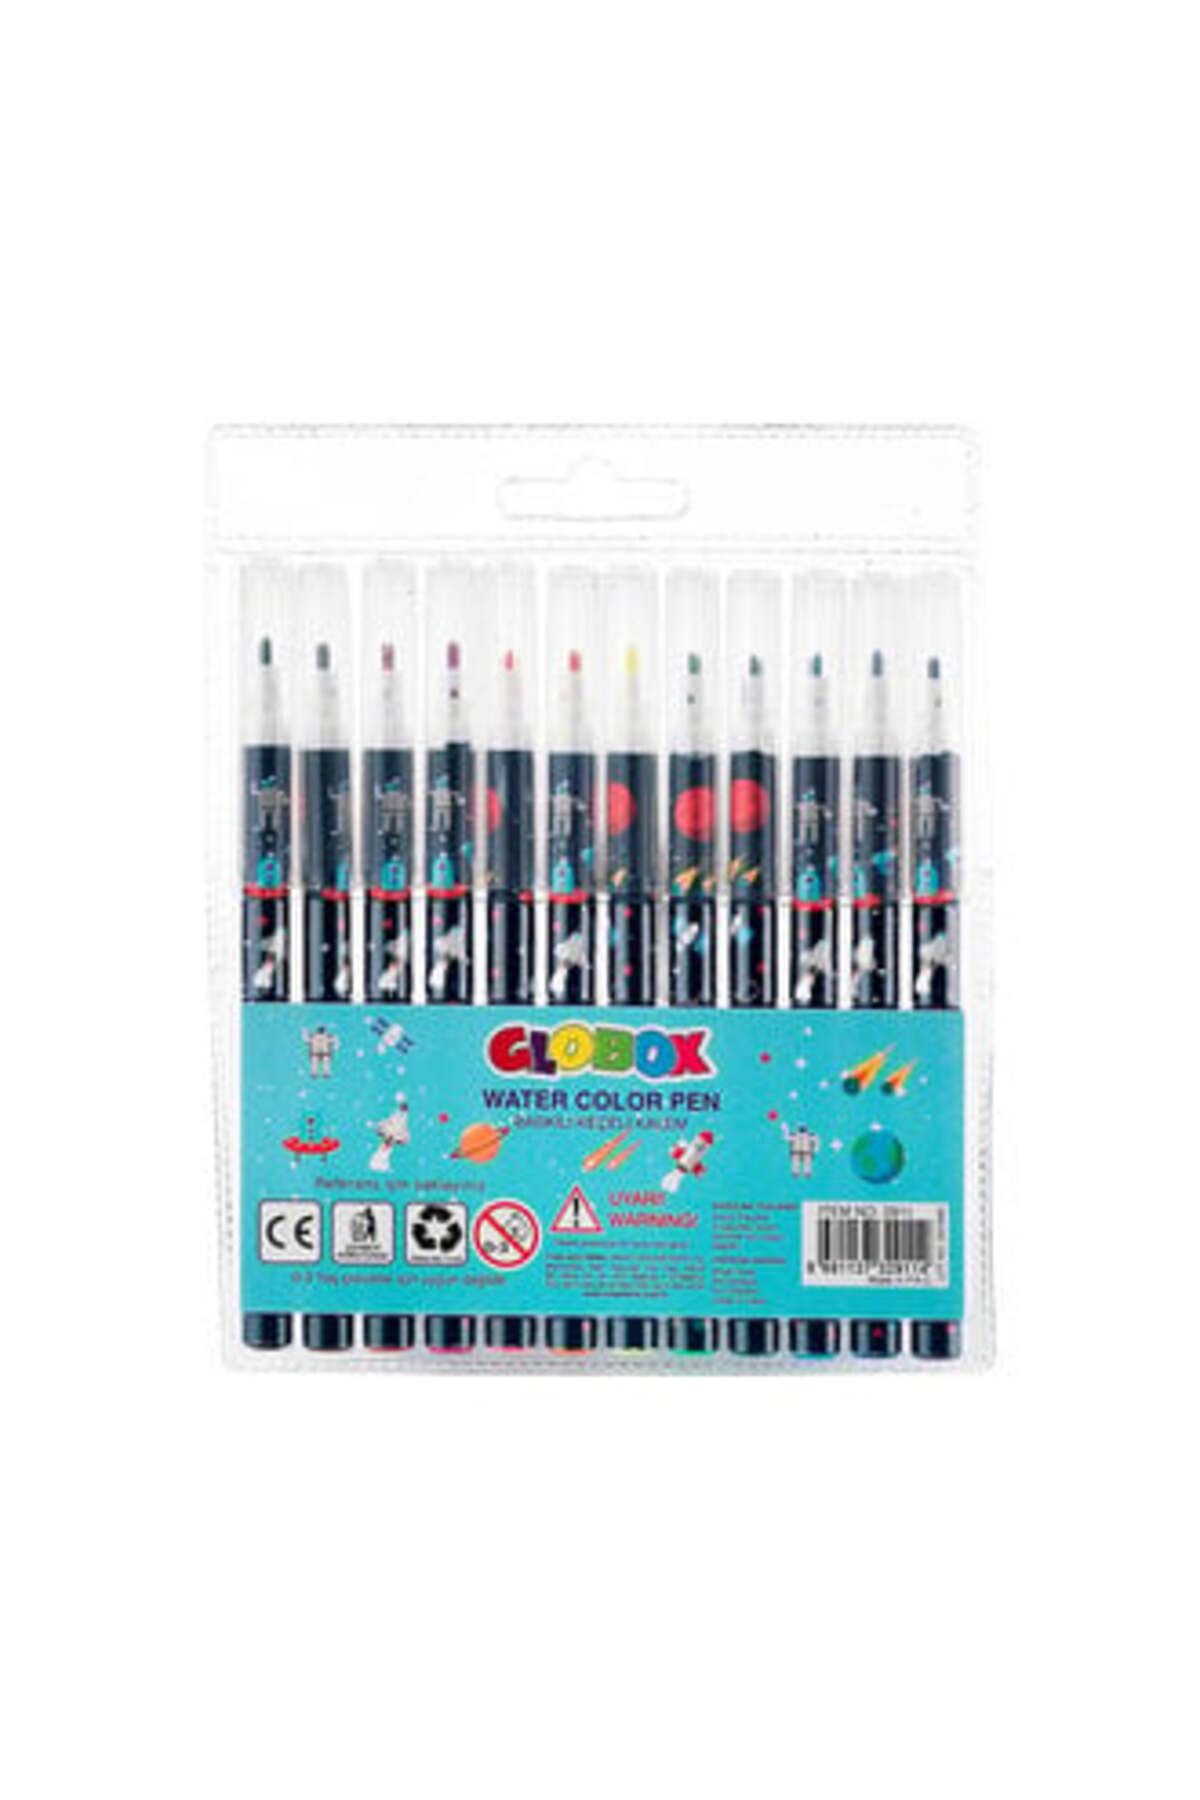 Globox Water Color Pen Baskılı Keçeli Kalem 12'li ( 1 ADET )